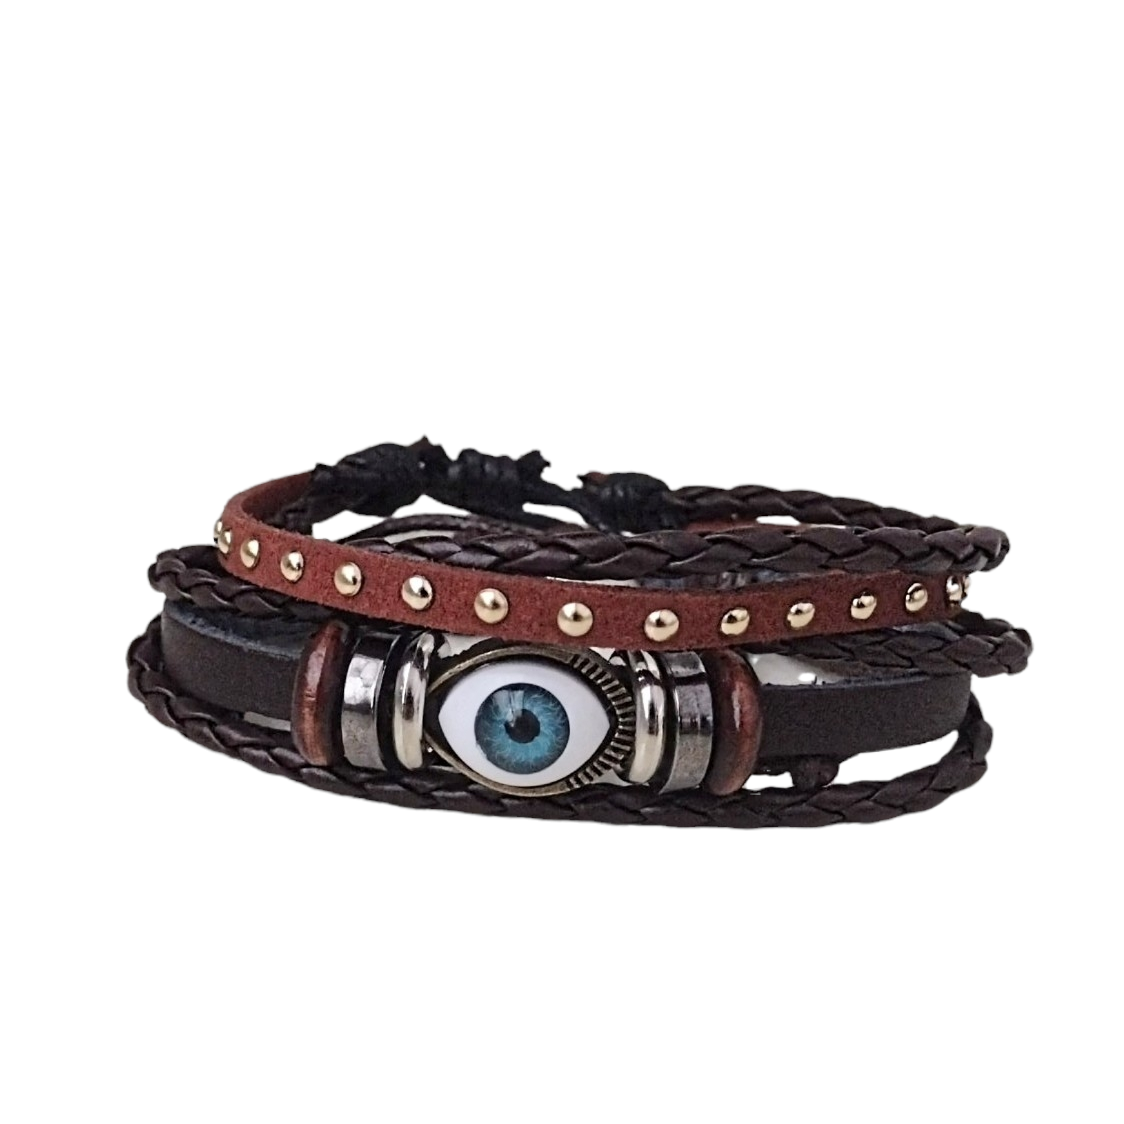 Evil Eye Renaissance Bracelet Set